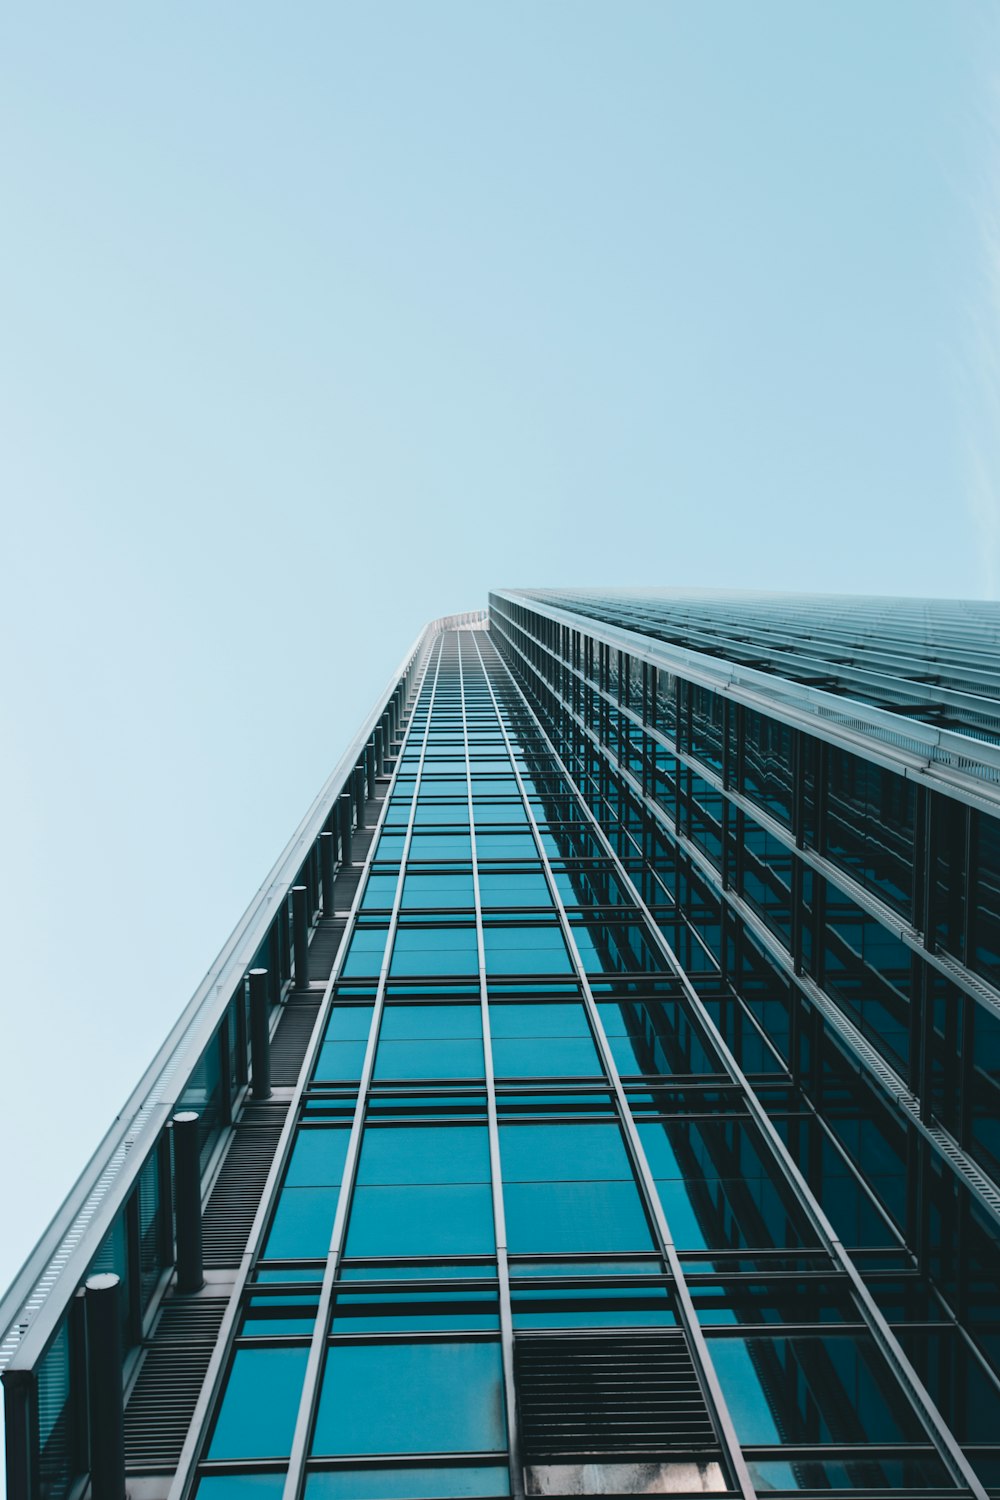 Fotografía de ángulo bajo de un edificio de gran altura de vidrio transparente